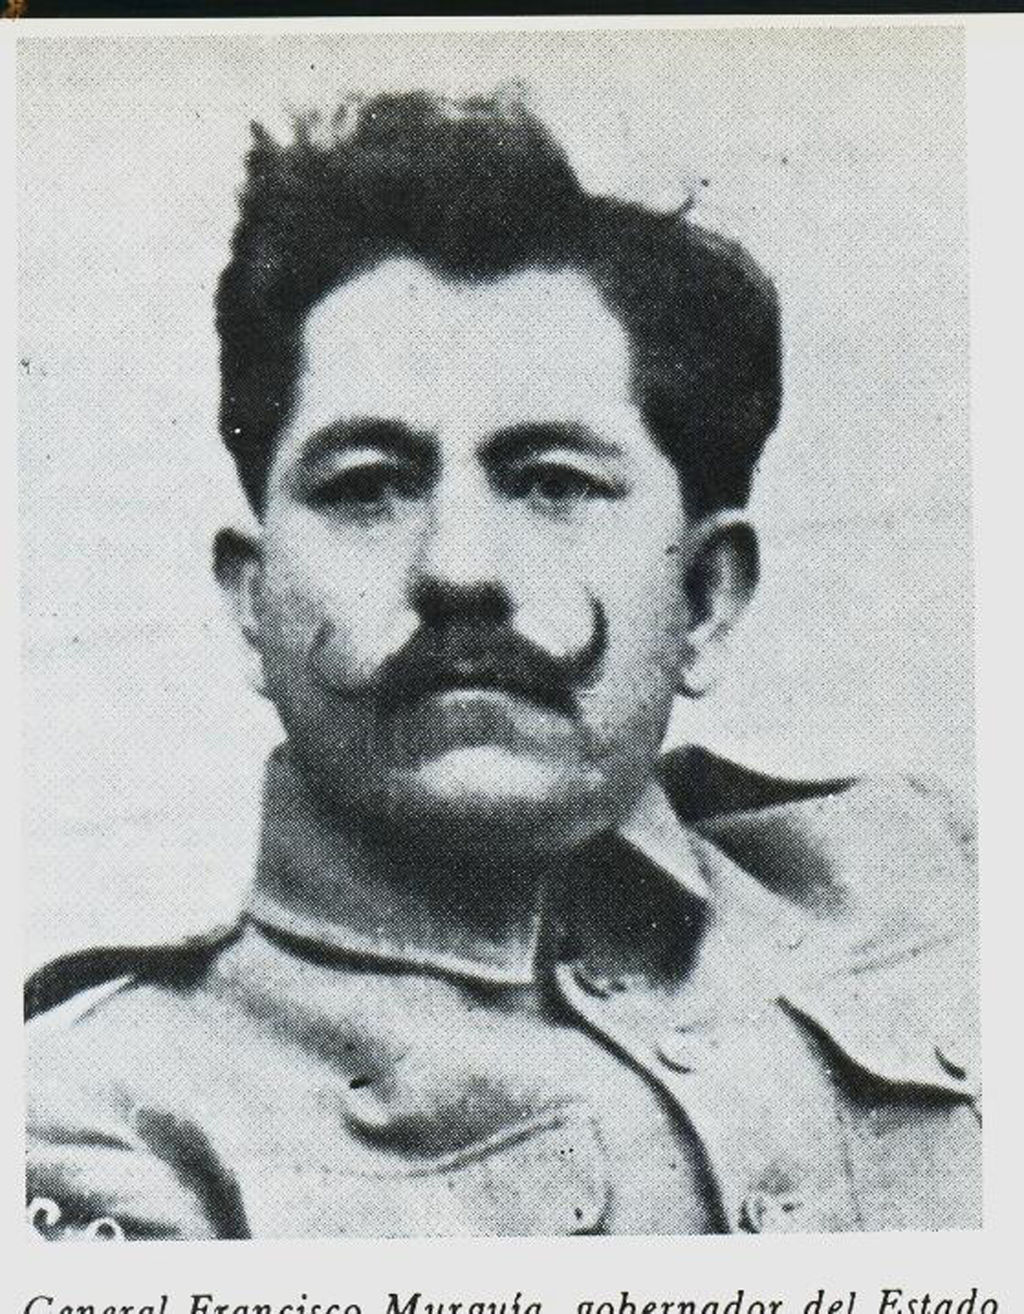 General Francisco Murguía ejecutó la dramática expulsión de los habitantes de Cuencamé y el incendió sus viviendas.
